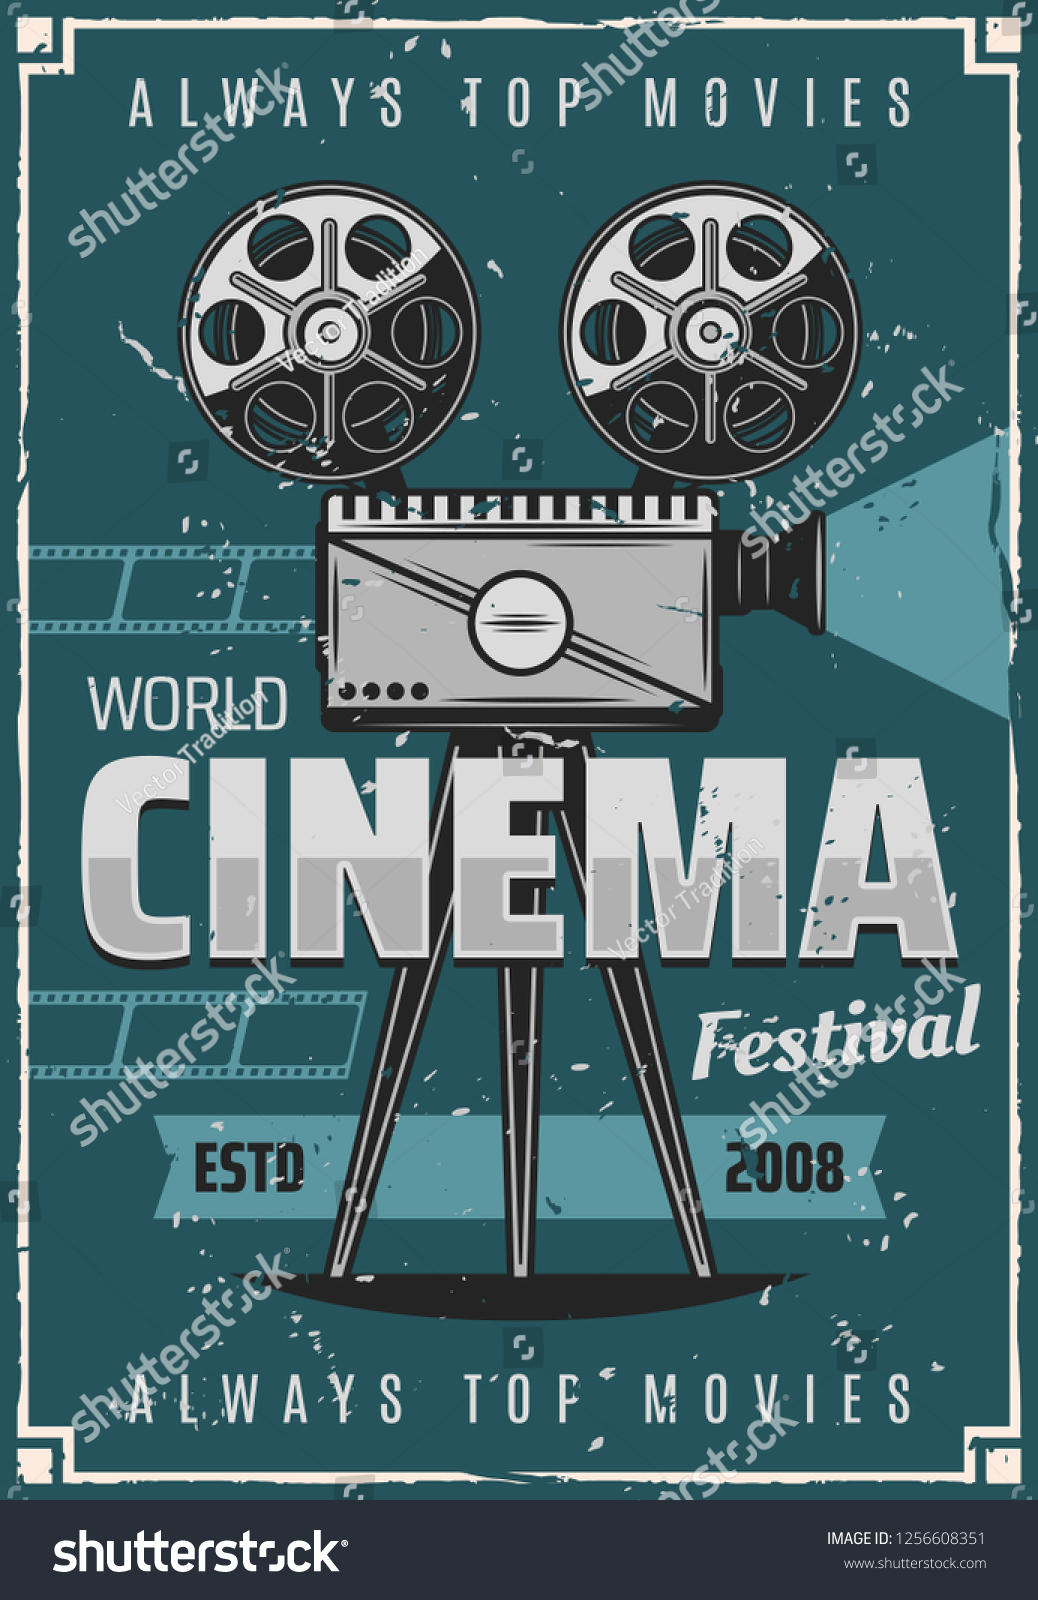 festival cinema movie schedule